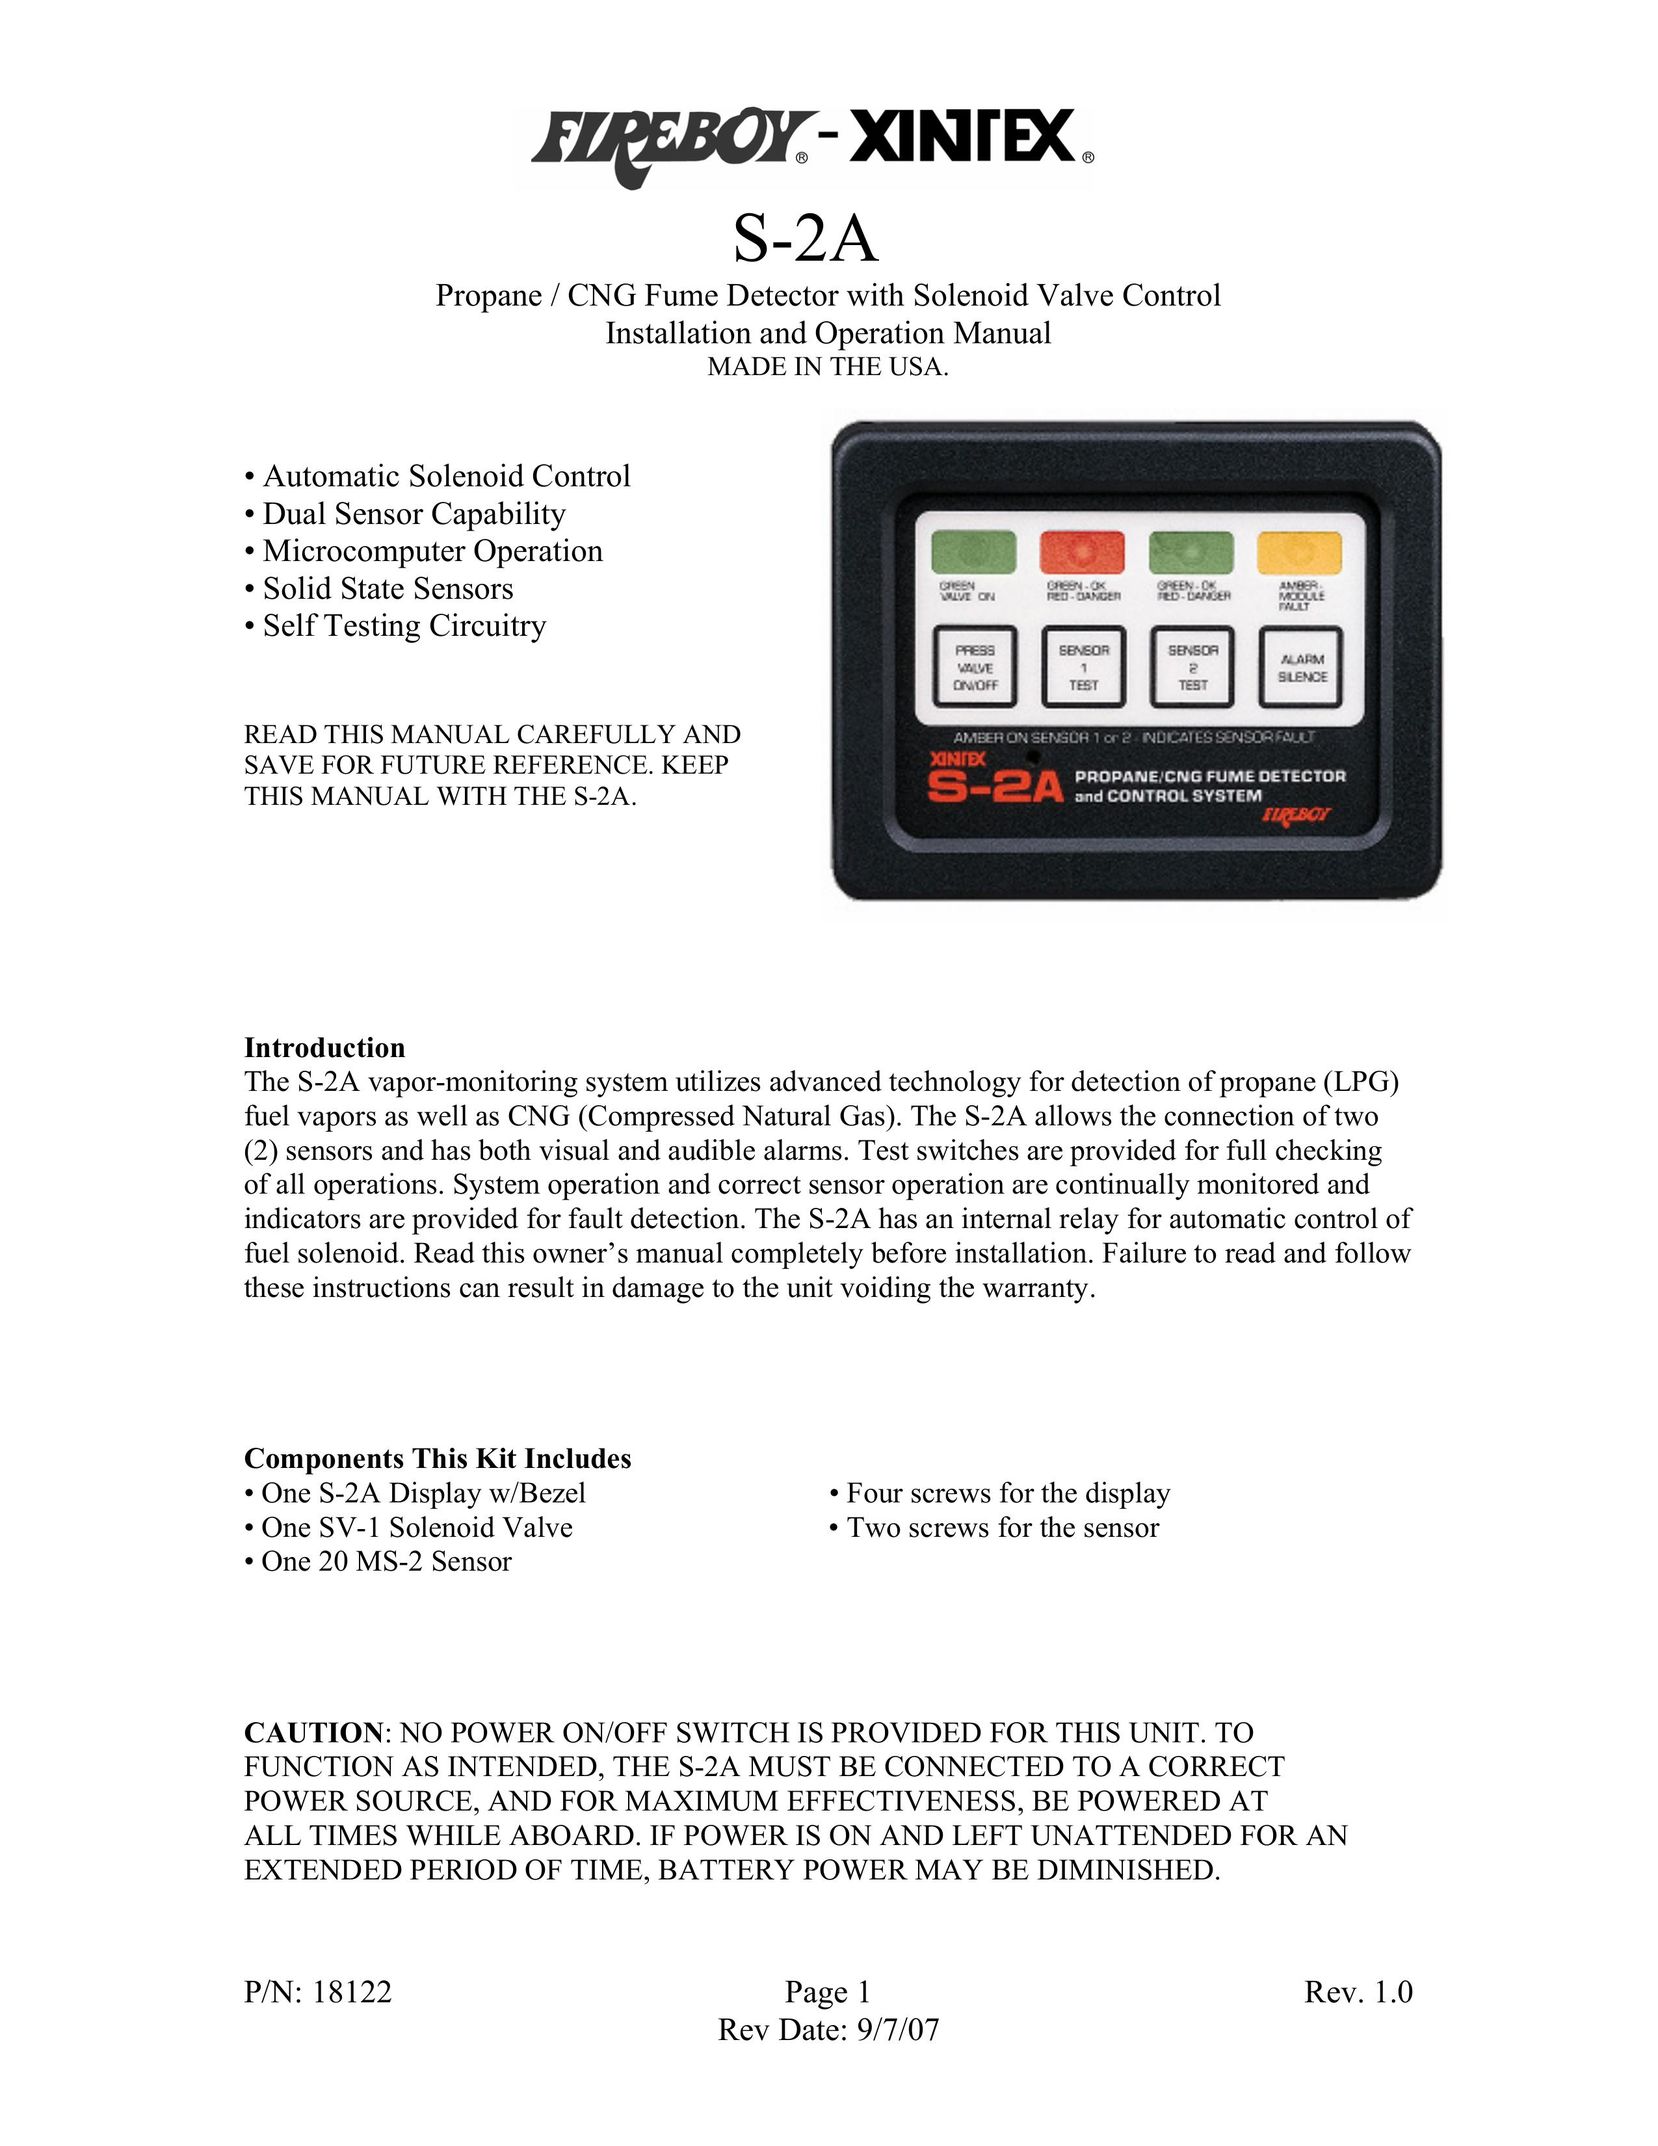 Fireboy- Xintex, LTD S-2A Carbon Monoxide Alarm User Manual